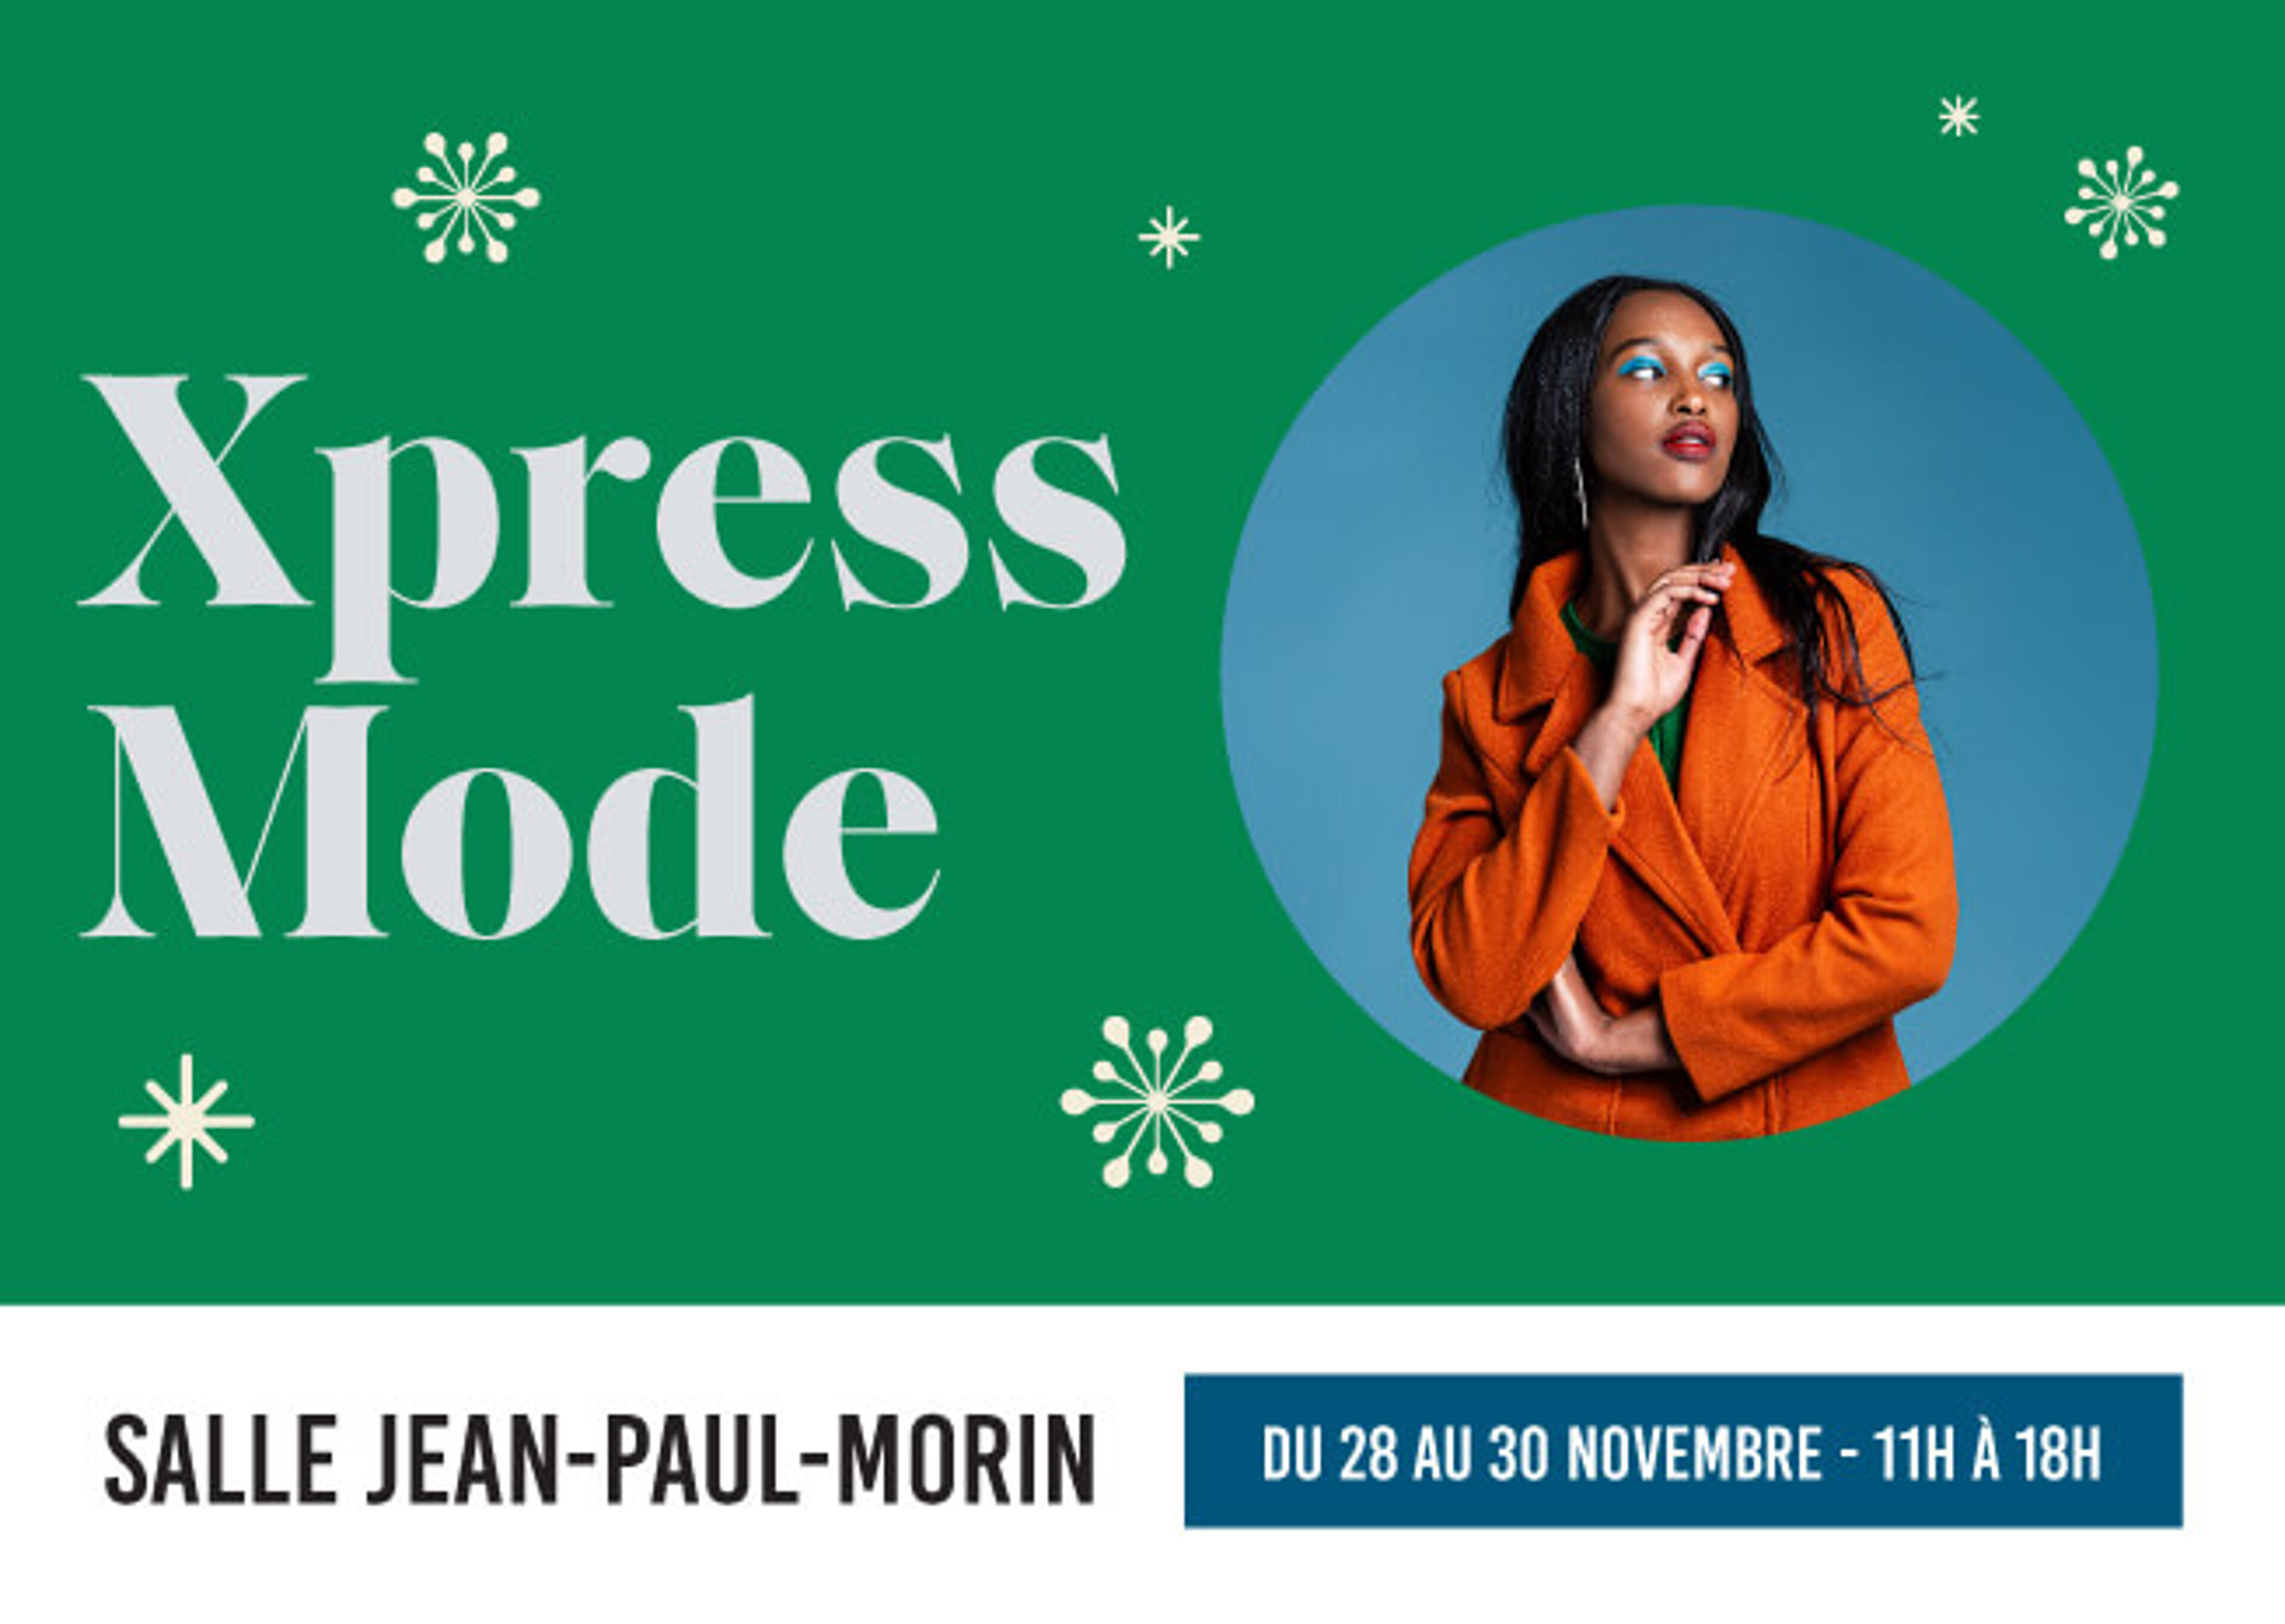 Flyer pour l'événement de mode 'Xpress Mode' à la Salle Jean-Paul-Morin, du 28 au 30 novembre, de 11h à 18h.